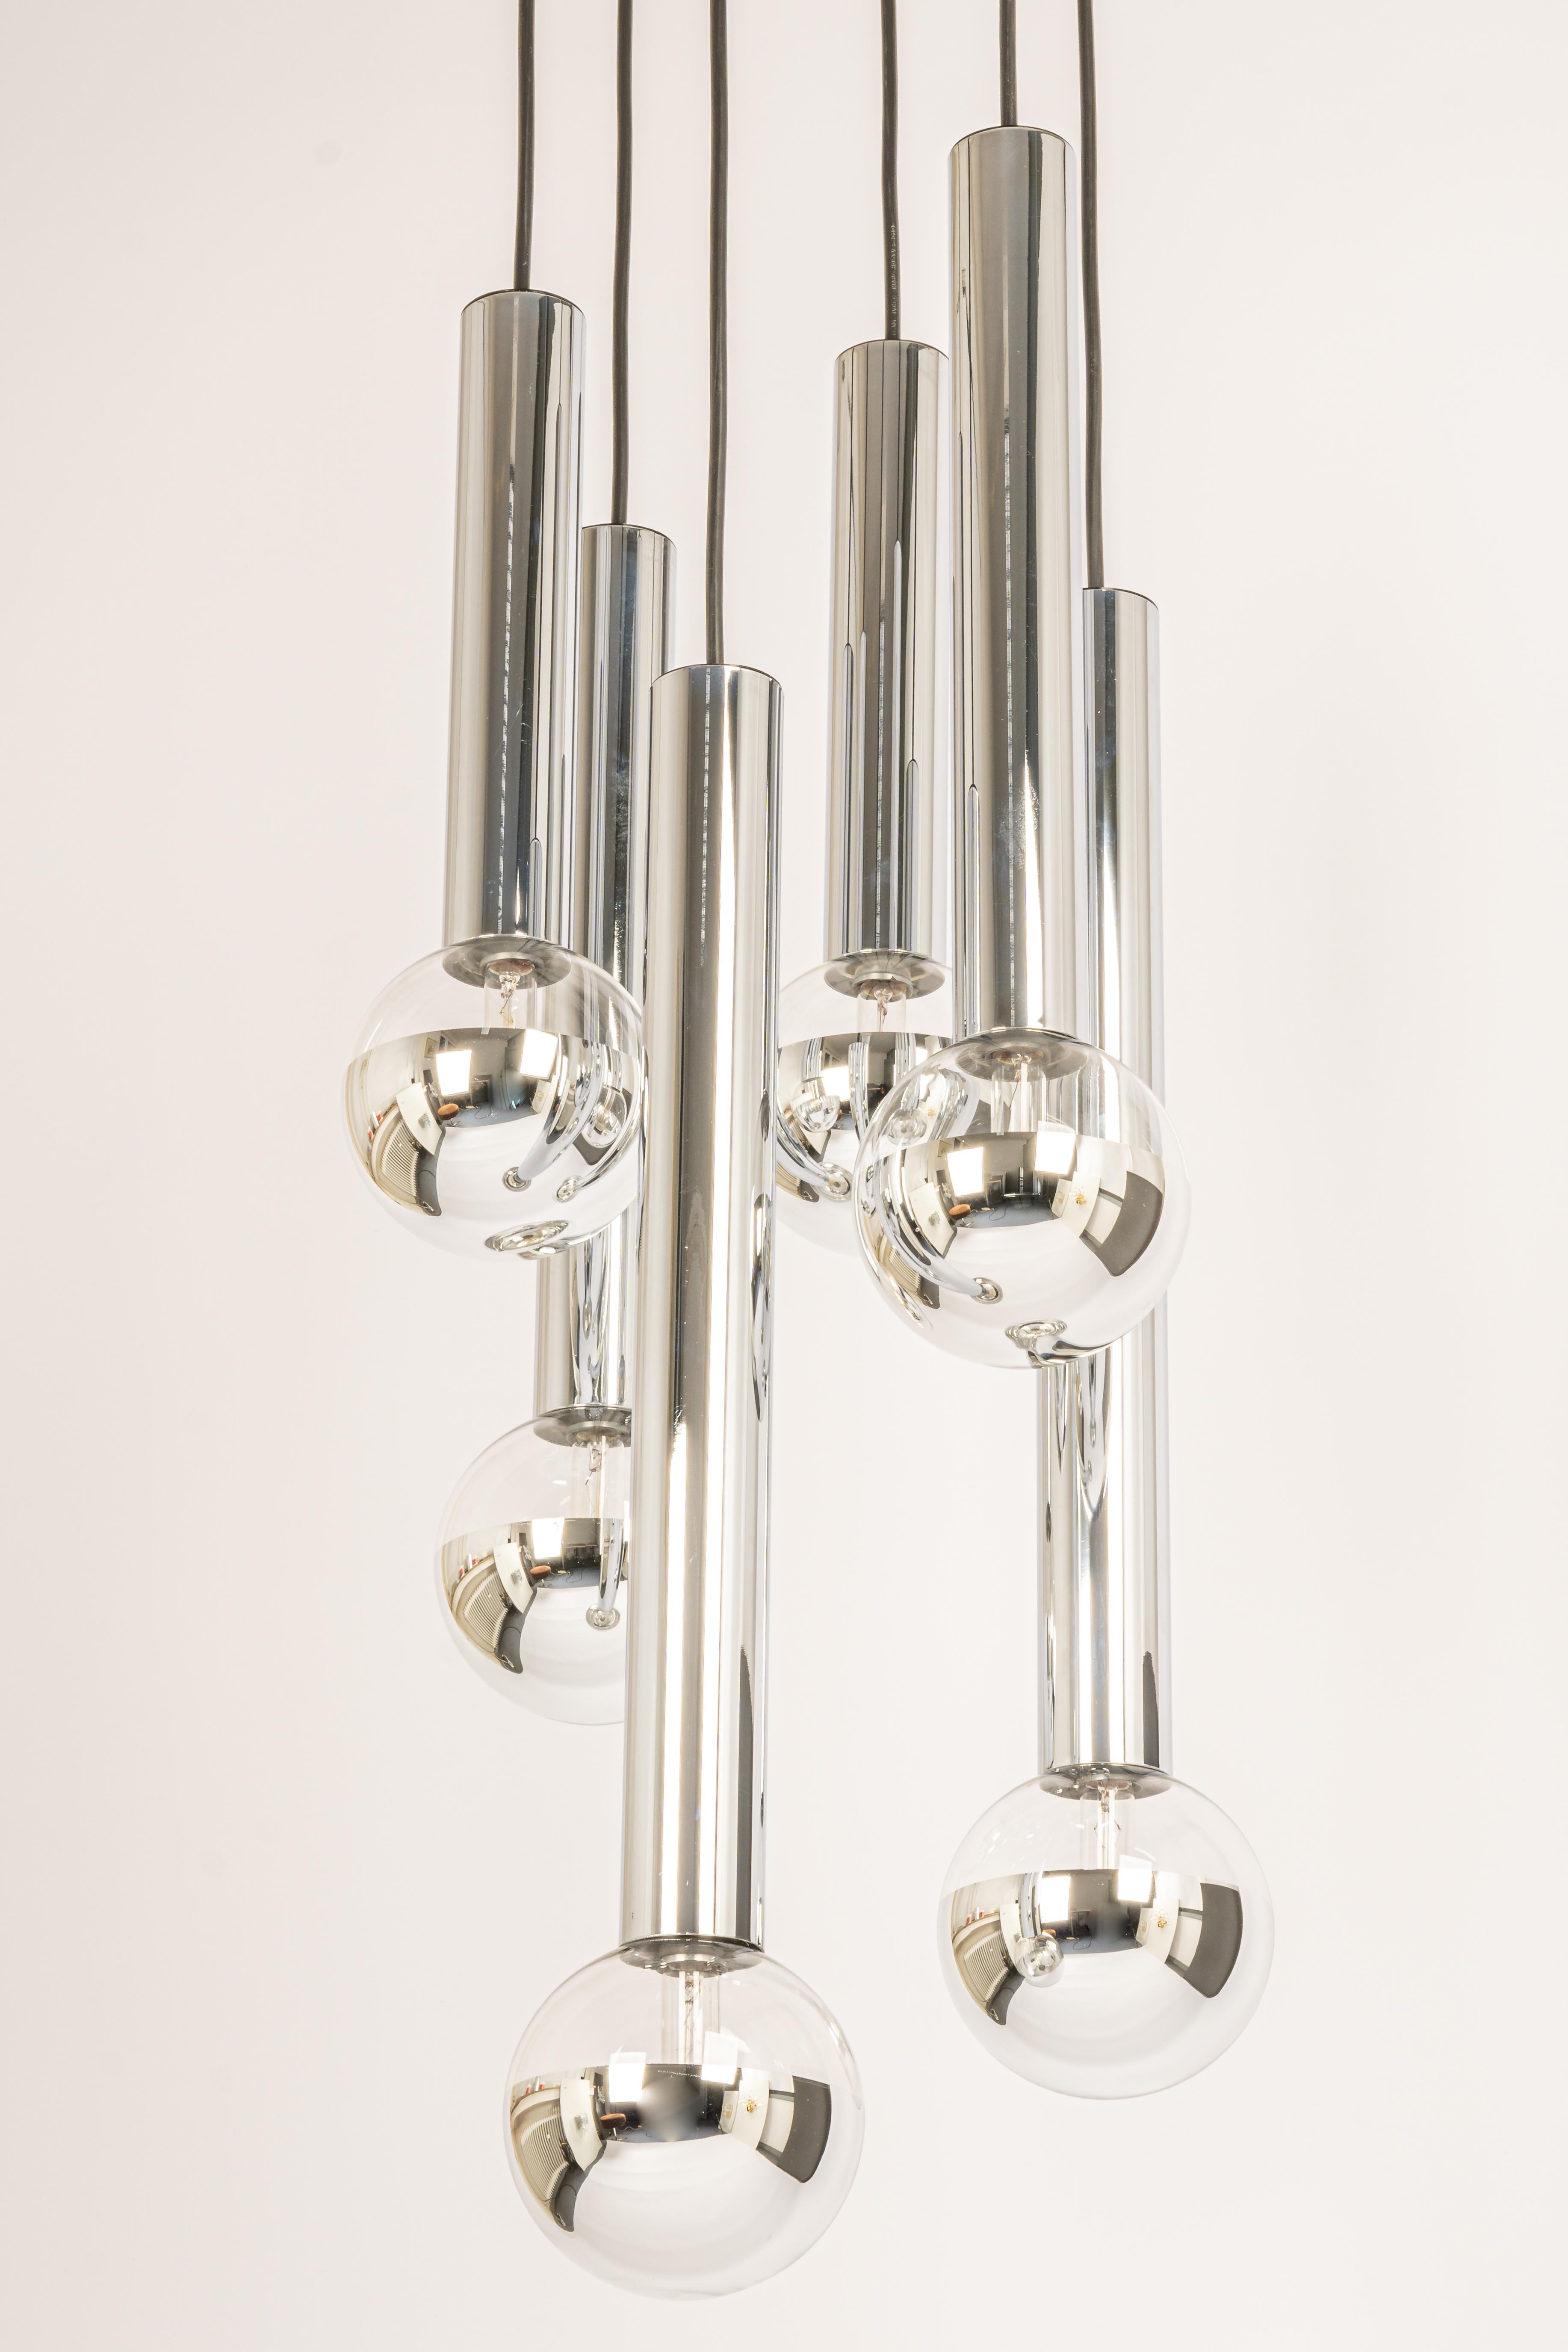 Un grand lustre spécial en cascade conçu par Motoko Ishii pour Staff Leuchten, fabriqué en Allemagne, vers les années 1970, avec 6 verres ronds bulle Clear.
Merveilleuse forme et effet de lumière stupéfiant.
Douilles : 6 x petites ampoules E14.